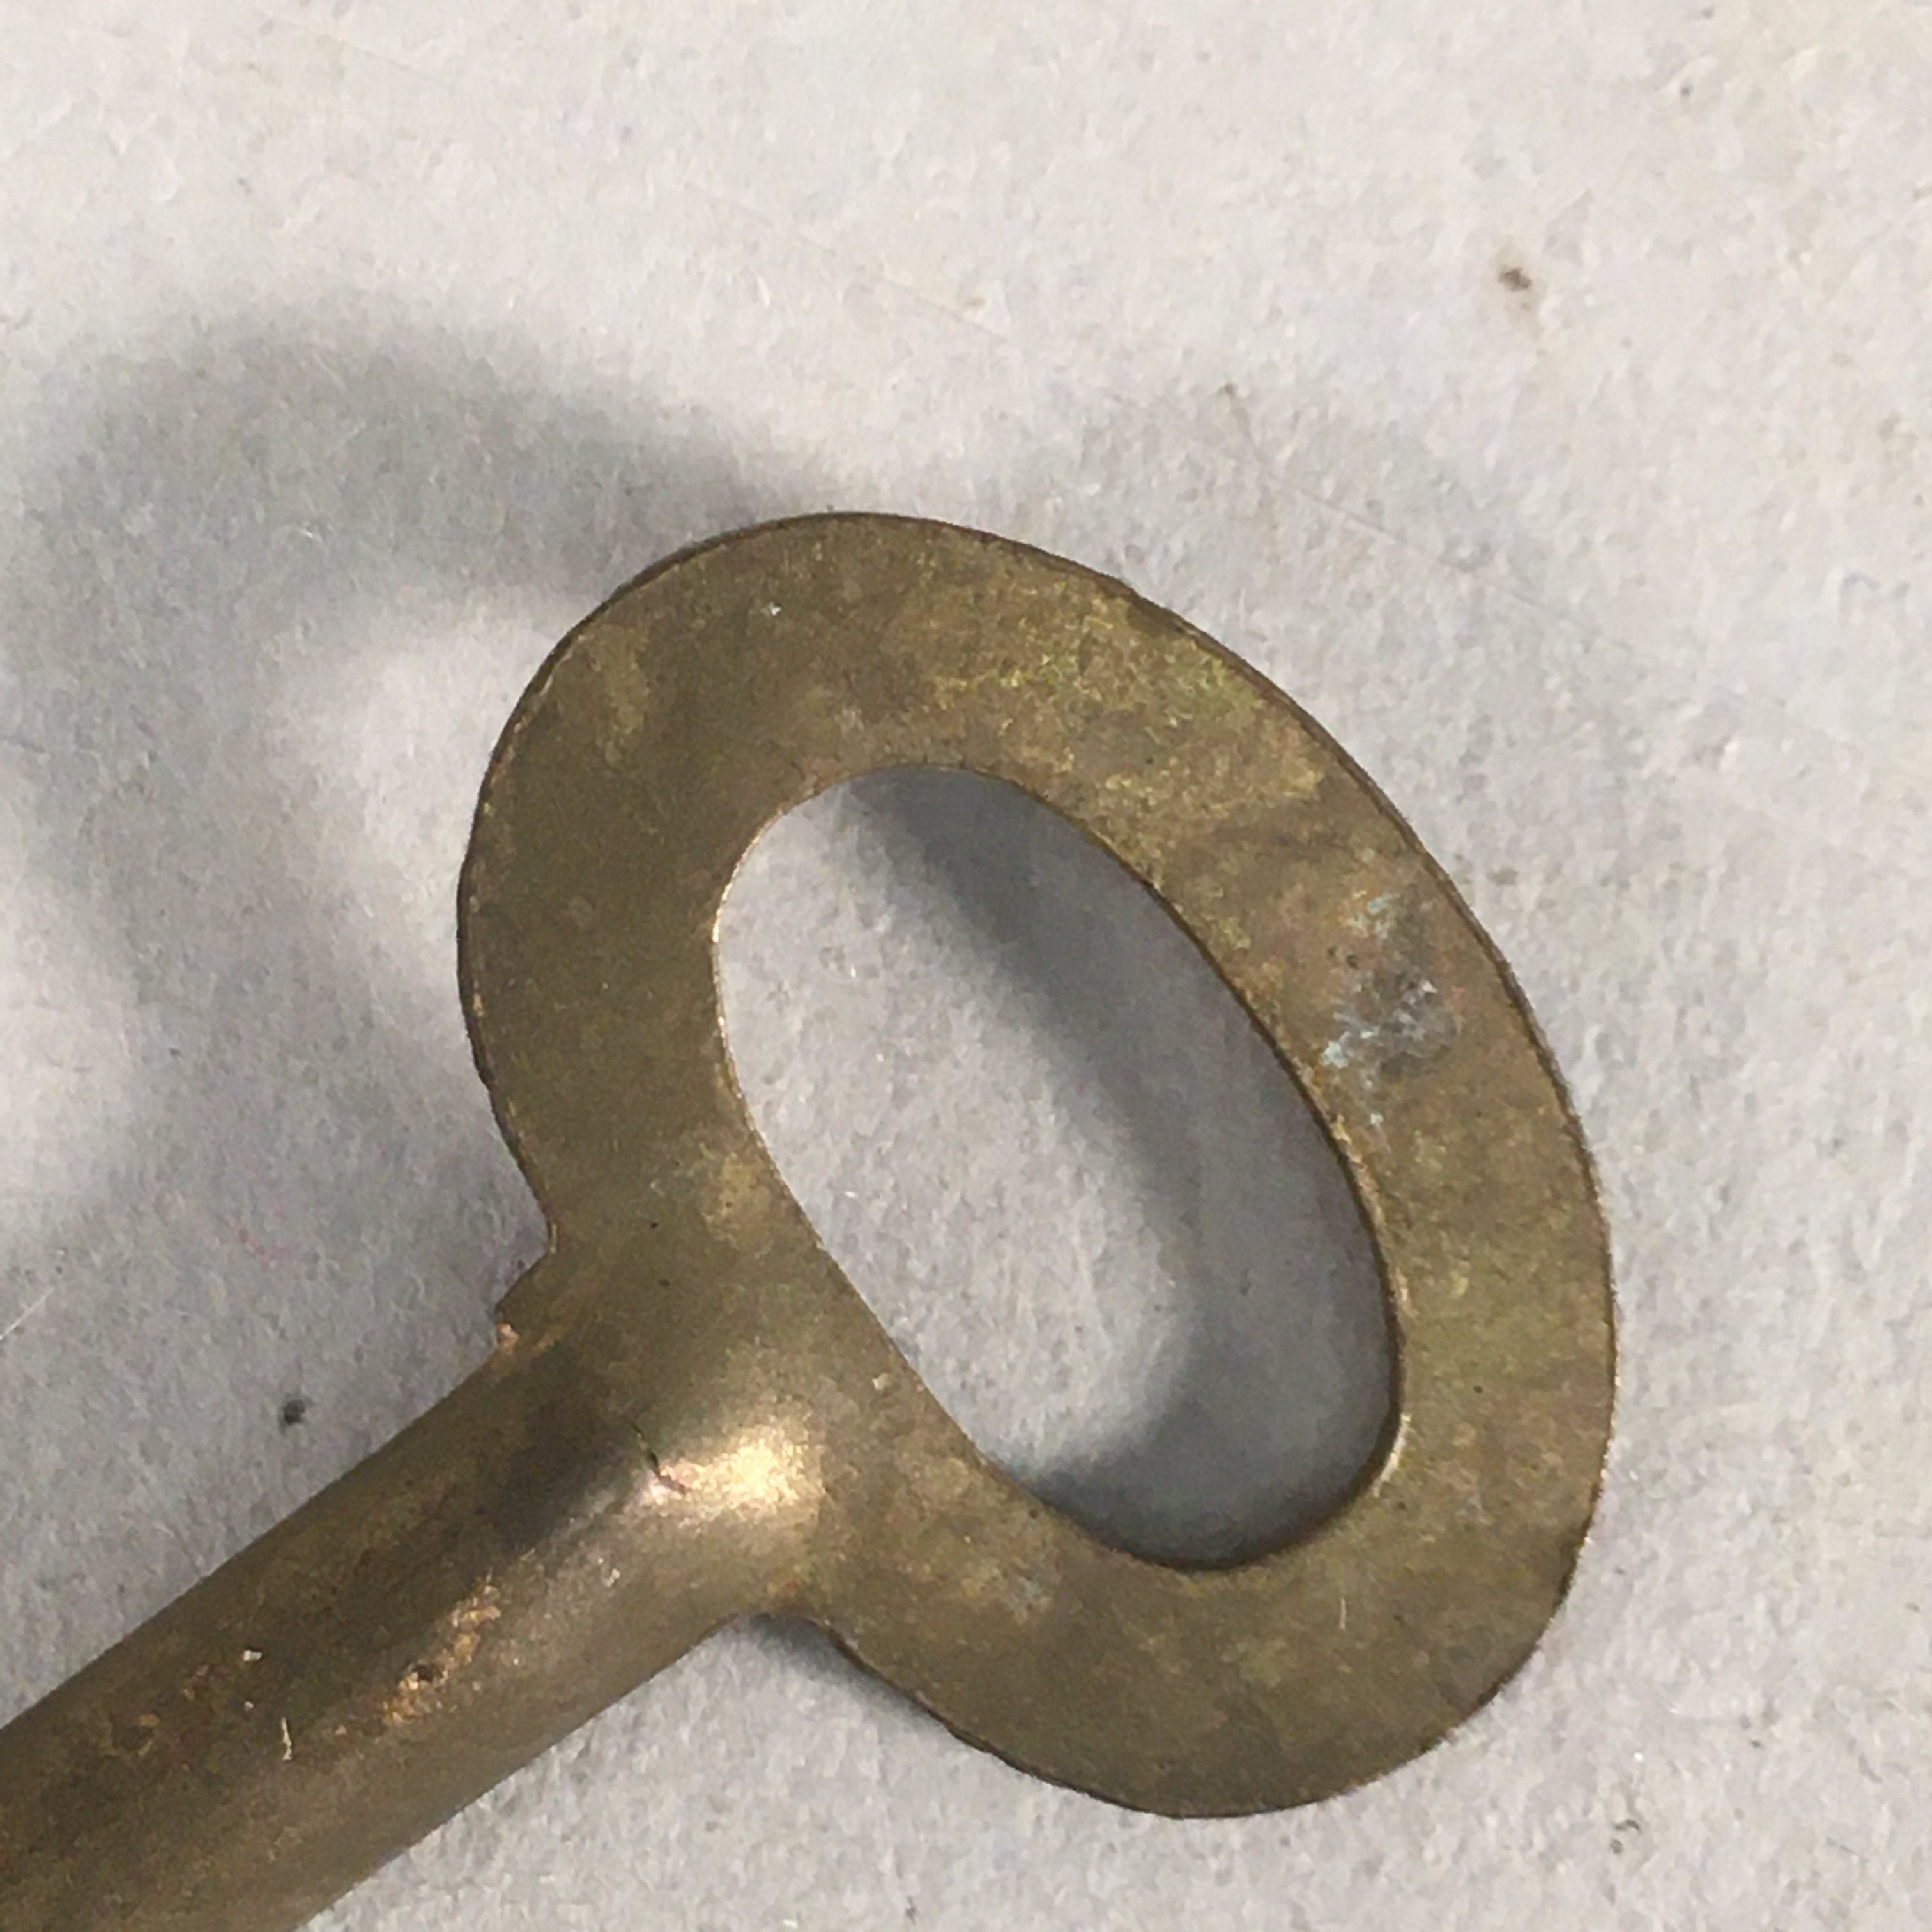 Japanese Metal Key Vtg Oval C1930 Brown Gold JK25